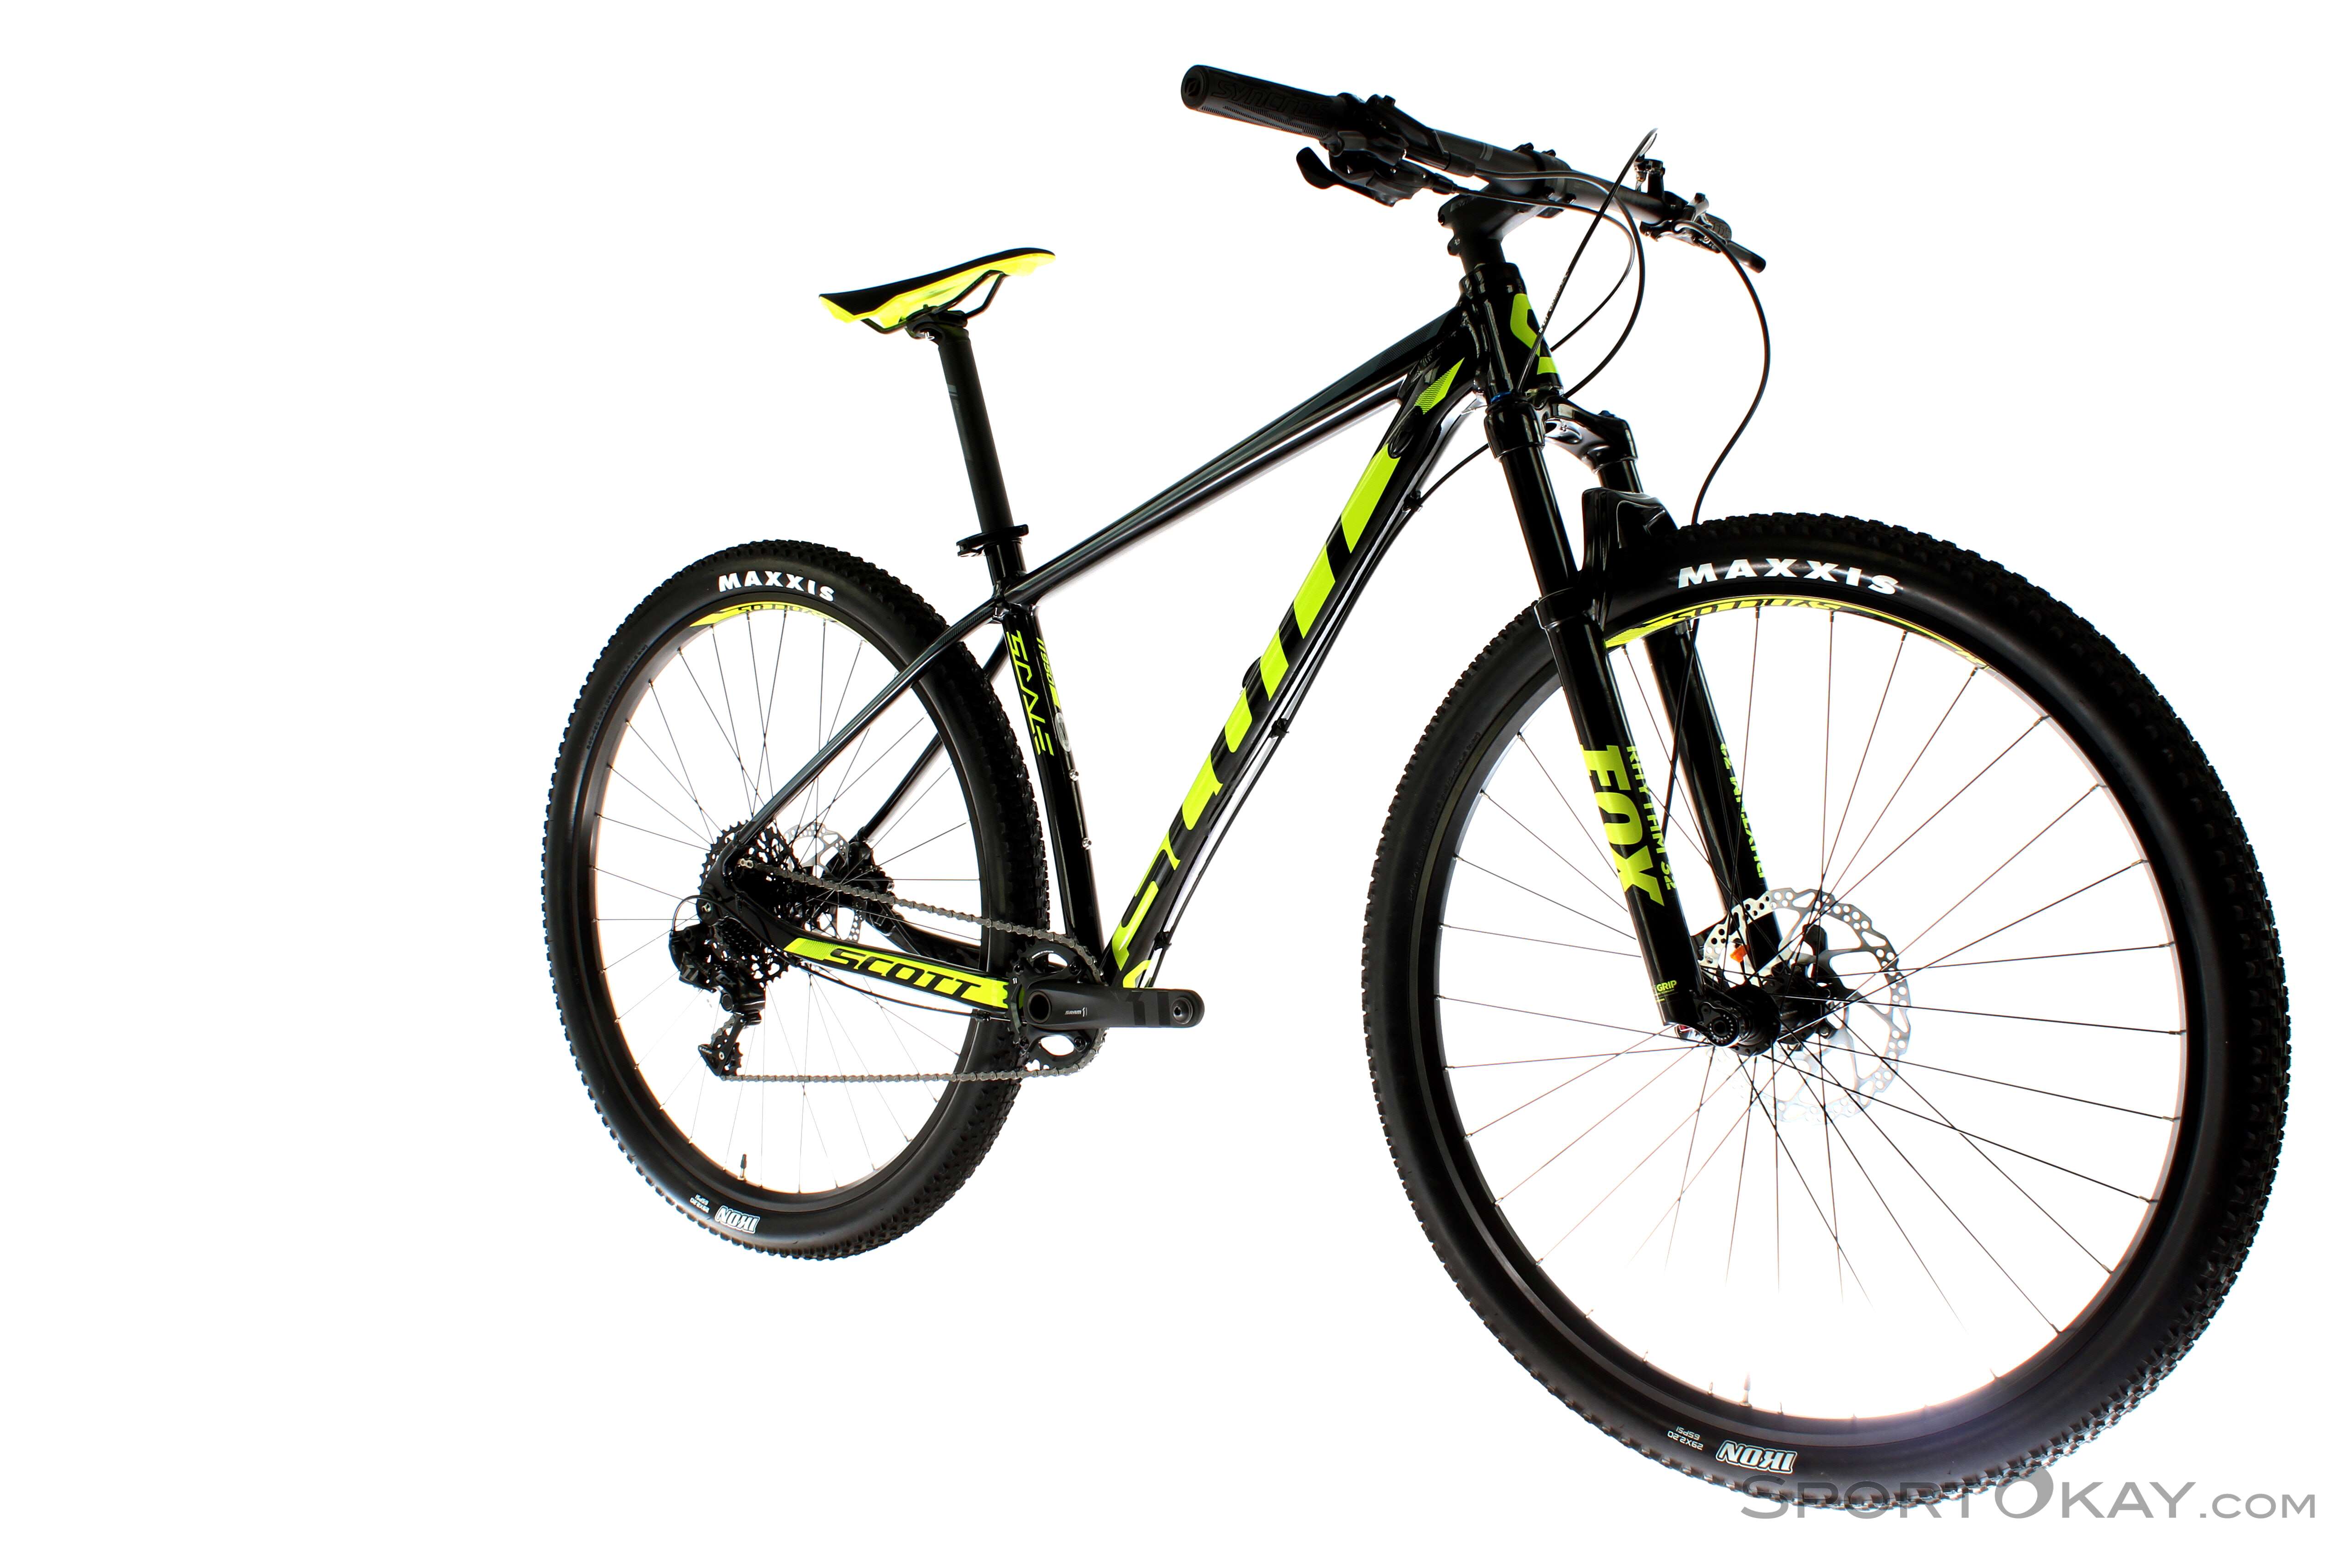 Beschuldigingen Lach solide Scott Scale 950 2018 Trail Bike - Cross Country & Trail - Mountain Bike -  Bike - All